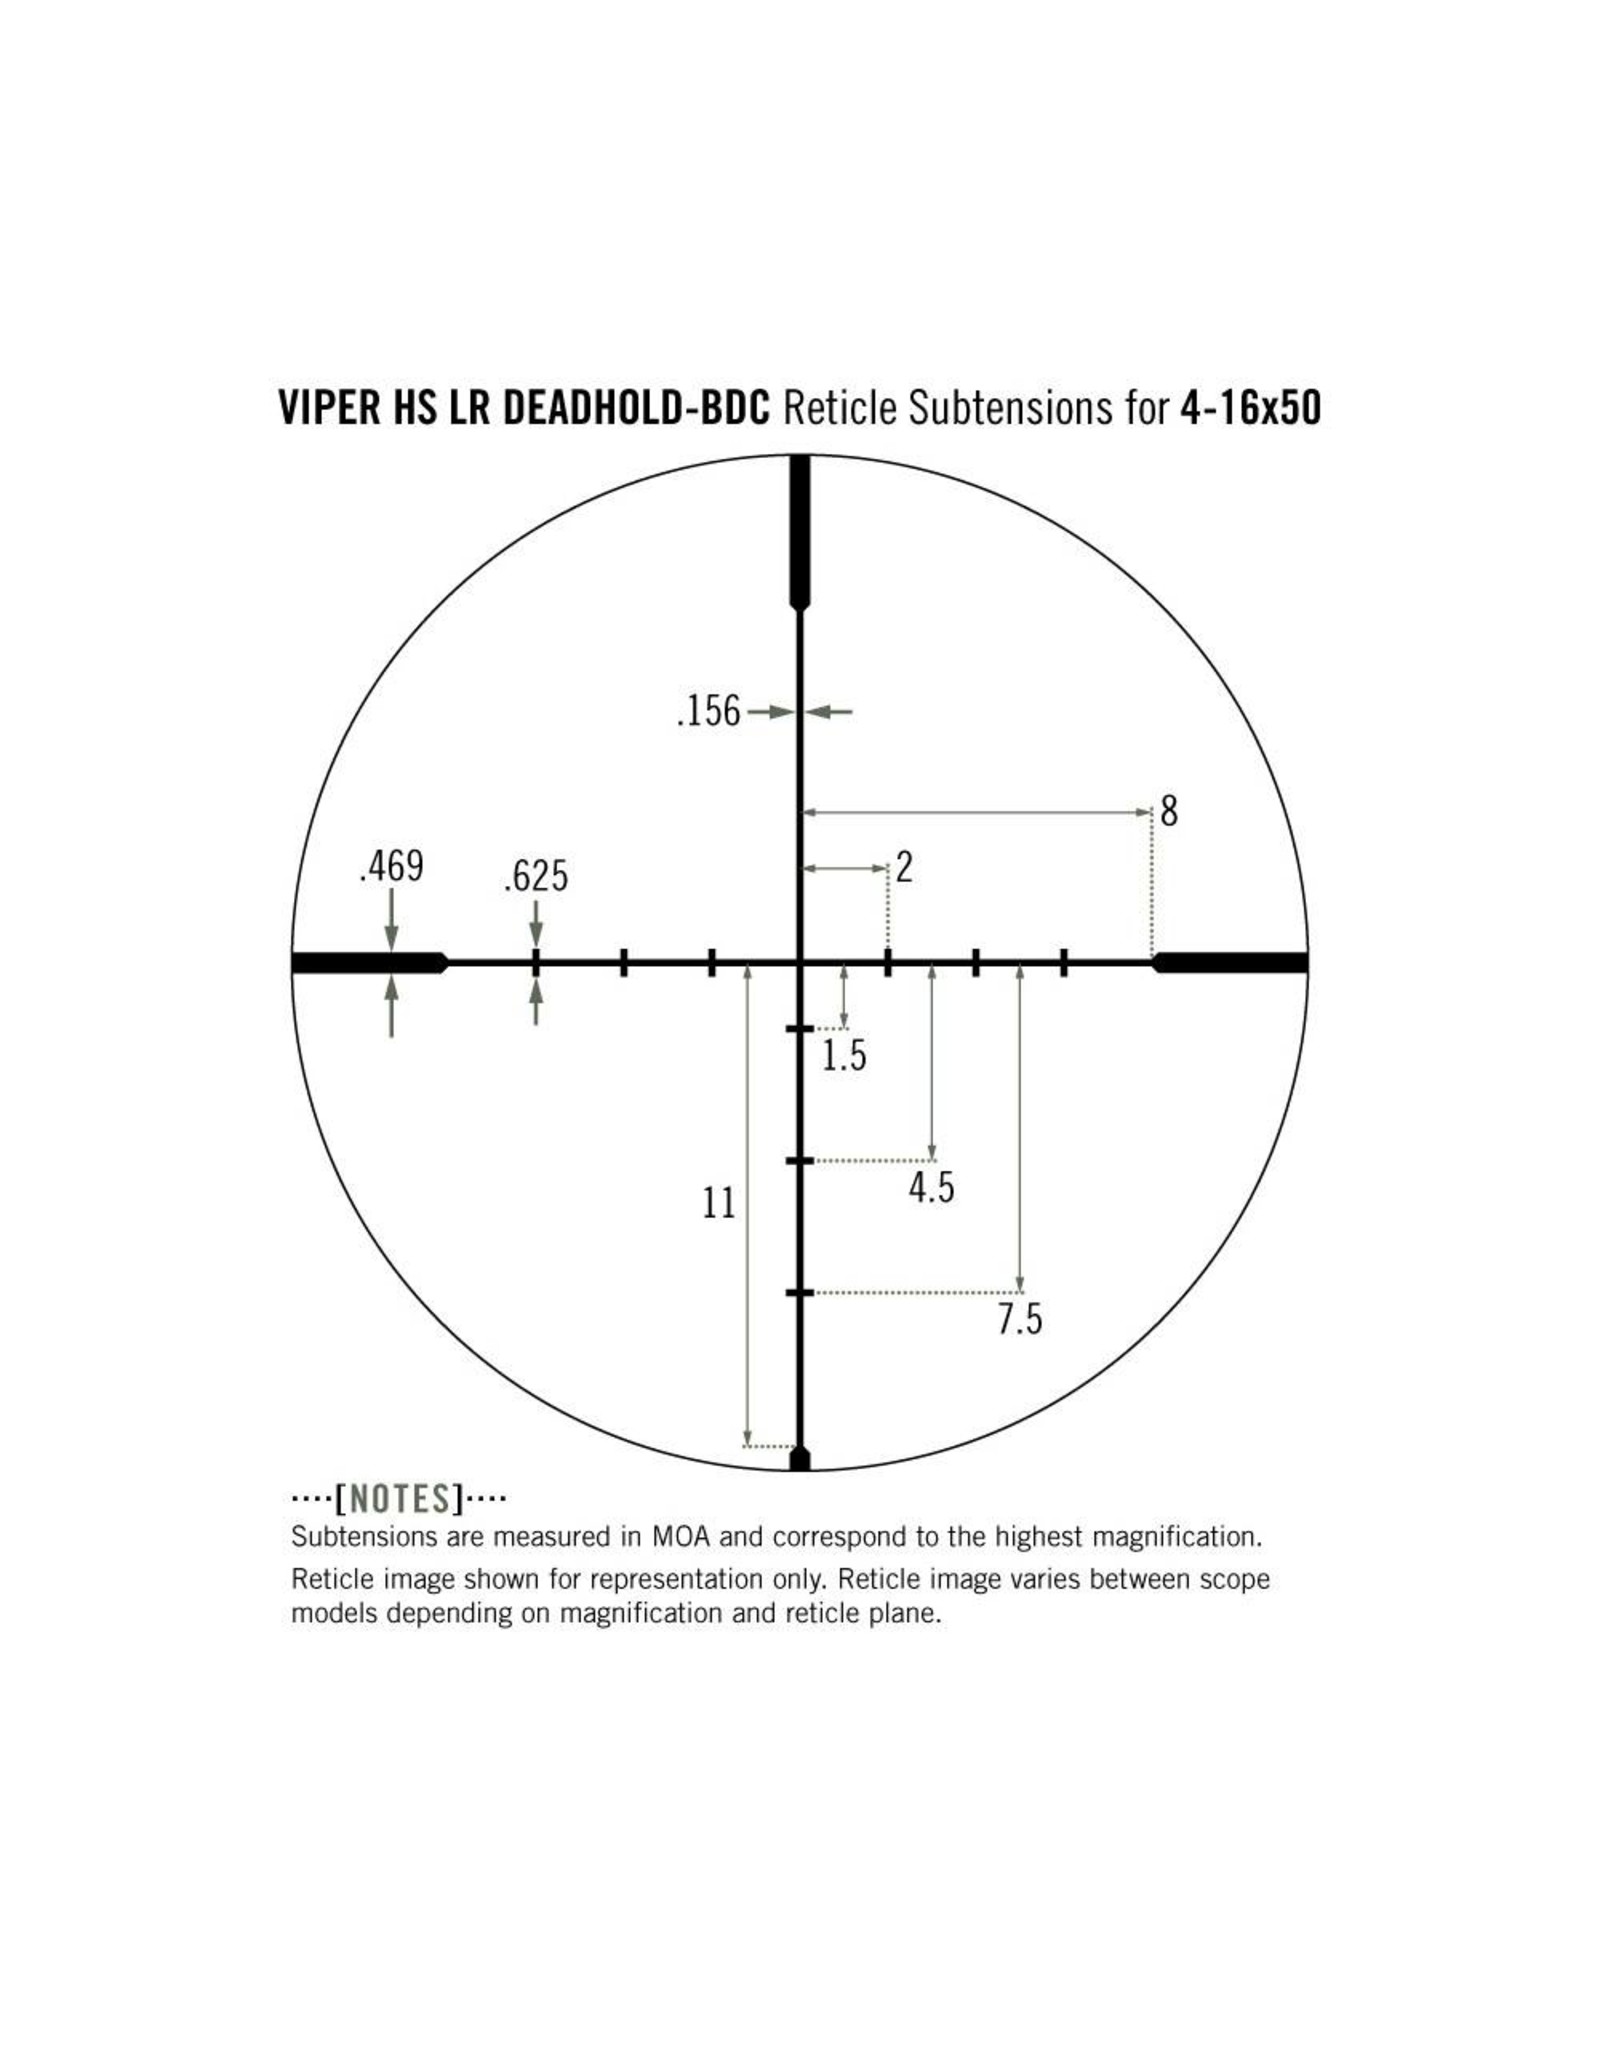 Vortex Vortex Viper HS 4-16x50 SFP Riflescope BDC